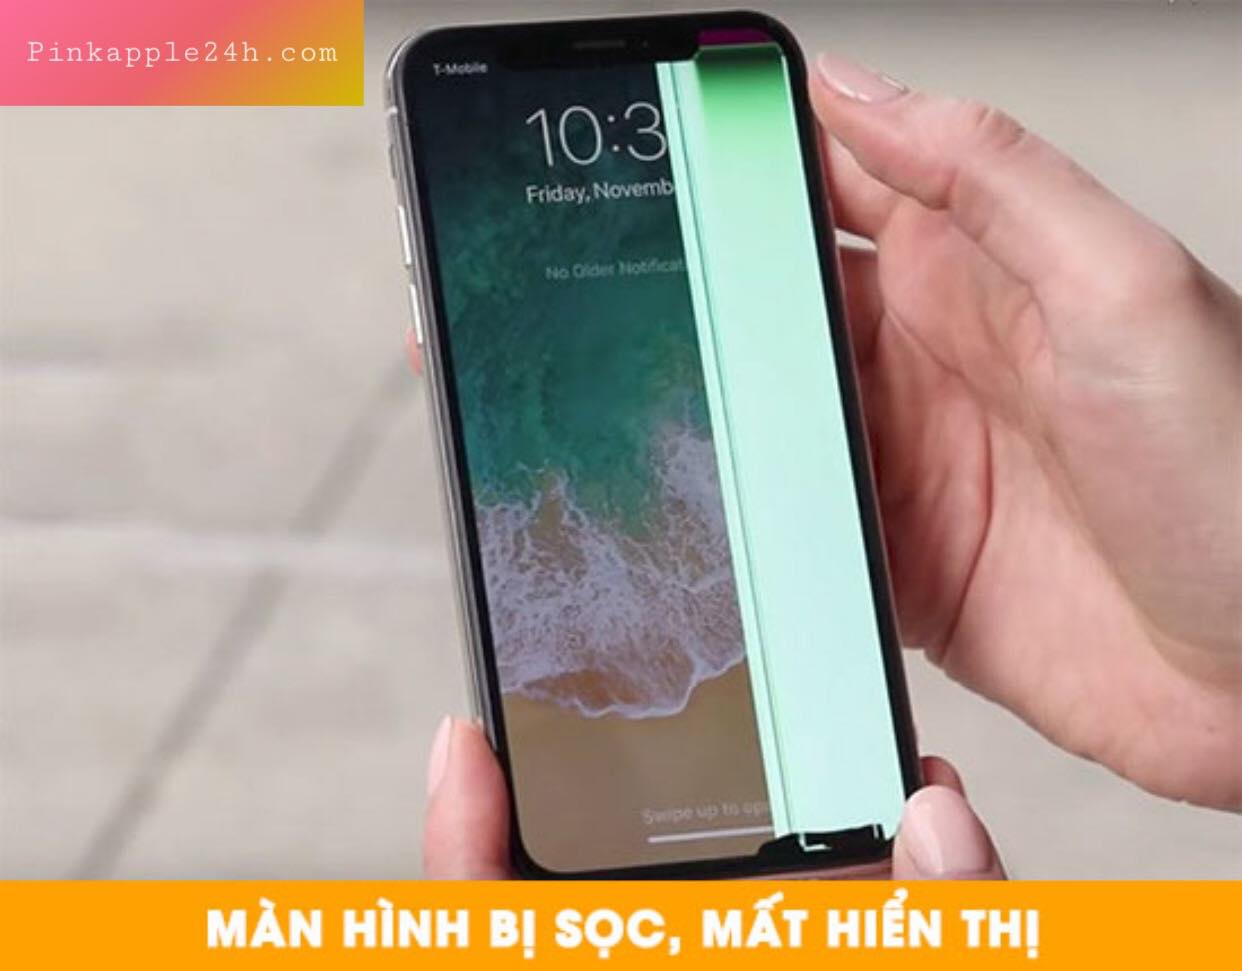 Giá chỉ khoảng 8 triệu cấu hình khoẻ mẫu iPhone hơn 3 năm tuổi này đang  được lùng mua nhiều nhất tại Việt Nam